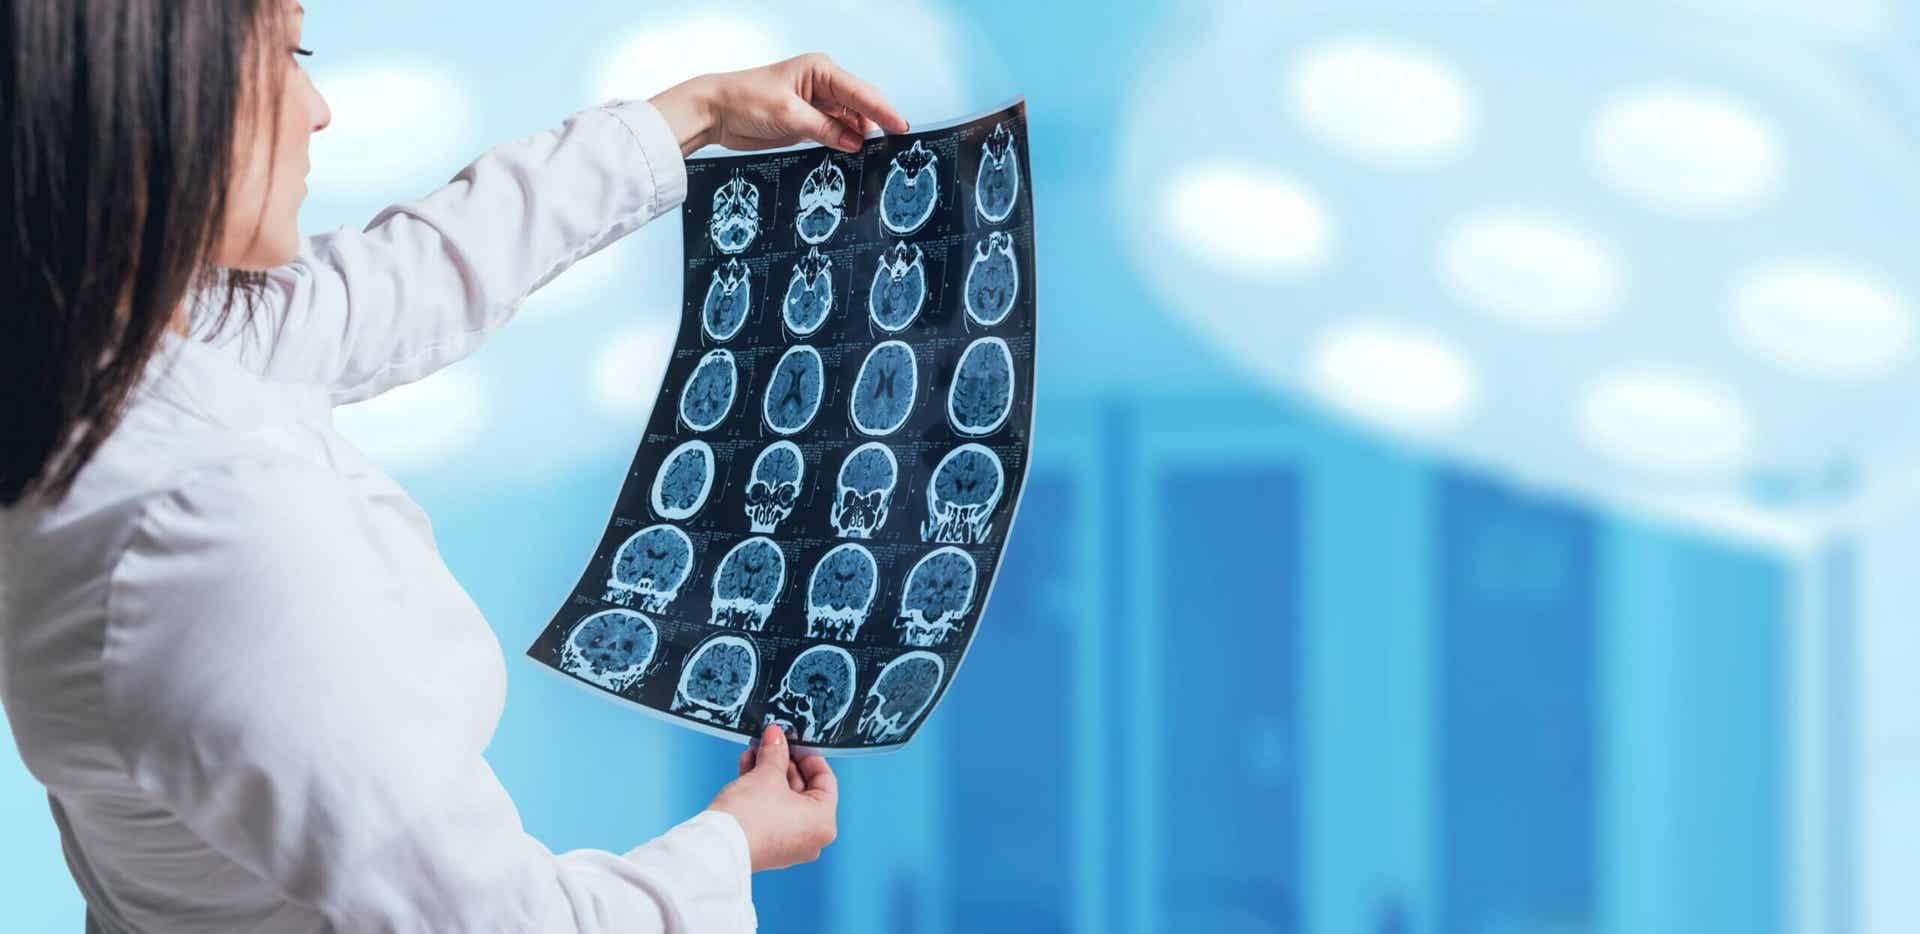 Angiographie cérébrale : caractéristiques, préparation et risques de l'examen